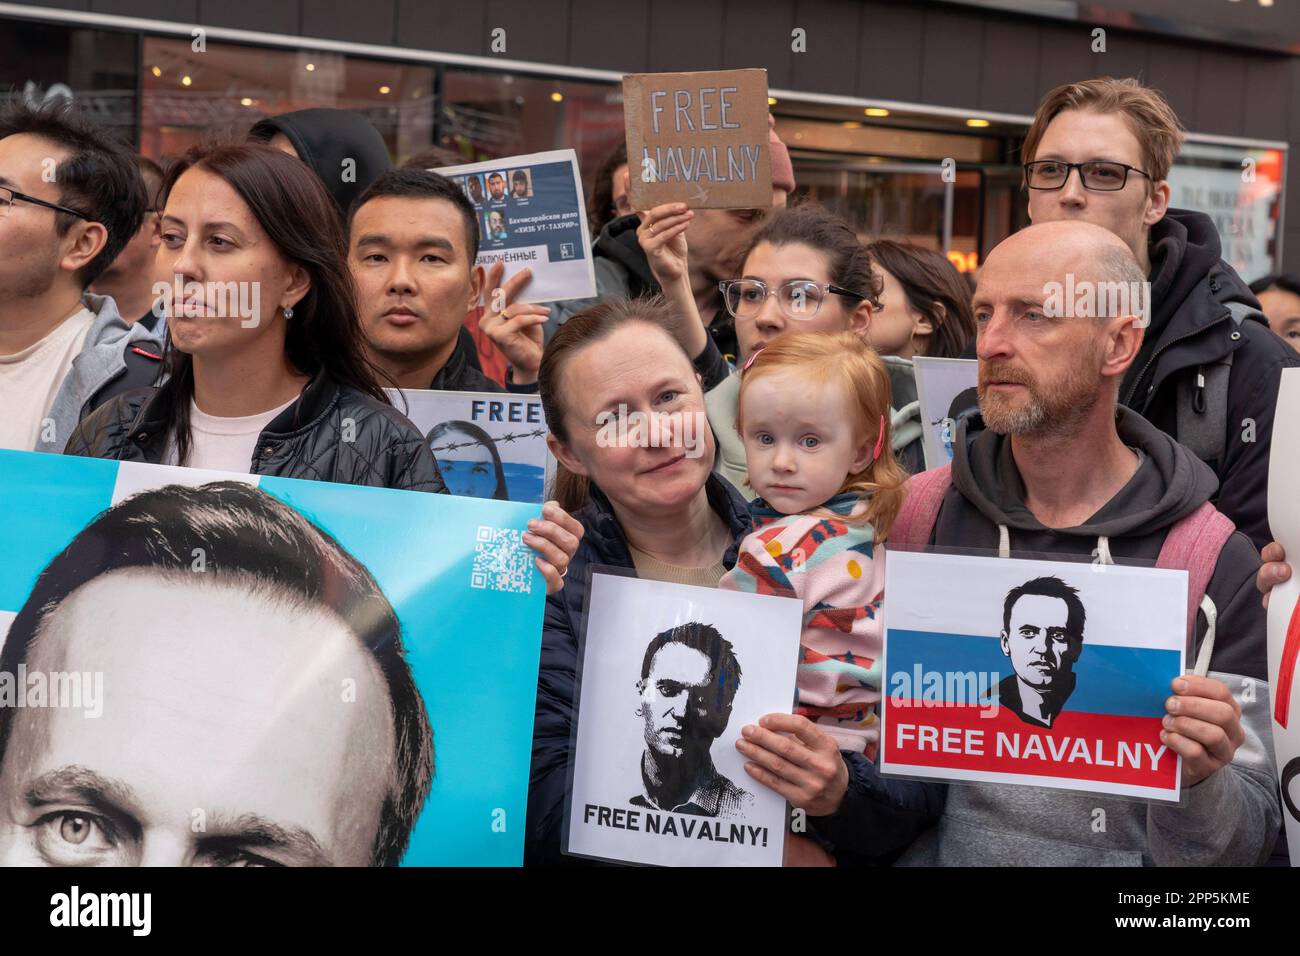 New York, New York, USA. 21. April 2023. (NEU) Russen, die in den USA leben, protestieren für Alexei Navalny am Times Square. 21. April 2023, New York, New York, USA: Demonstranten, die Schilder für Alexej Navalny und Anti-Vladimir Putin-Schilder auf dem Times Square aufbrachten, waren Russen, die Aktivisten sprachen, die Empörung über Wladimir Putins Herrschaft und die Verhaftung des russischen Oppositionsführers Alexej Navalny zum Ausdruck brachten, die gerade sagte, Alexei ist am 21. April 2023 in New York City wieder in Lebensgefahr. (Kreditbild: © M10s/TheNEWS2 via ZUMA Press Wire) NUR REDAKTIONELLE VERWENDUNG! Nicht für Commerci Stockfoto